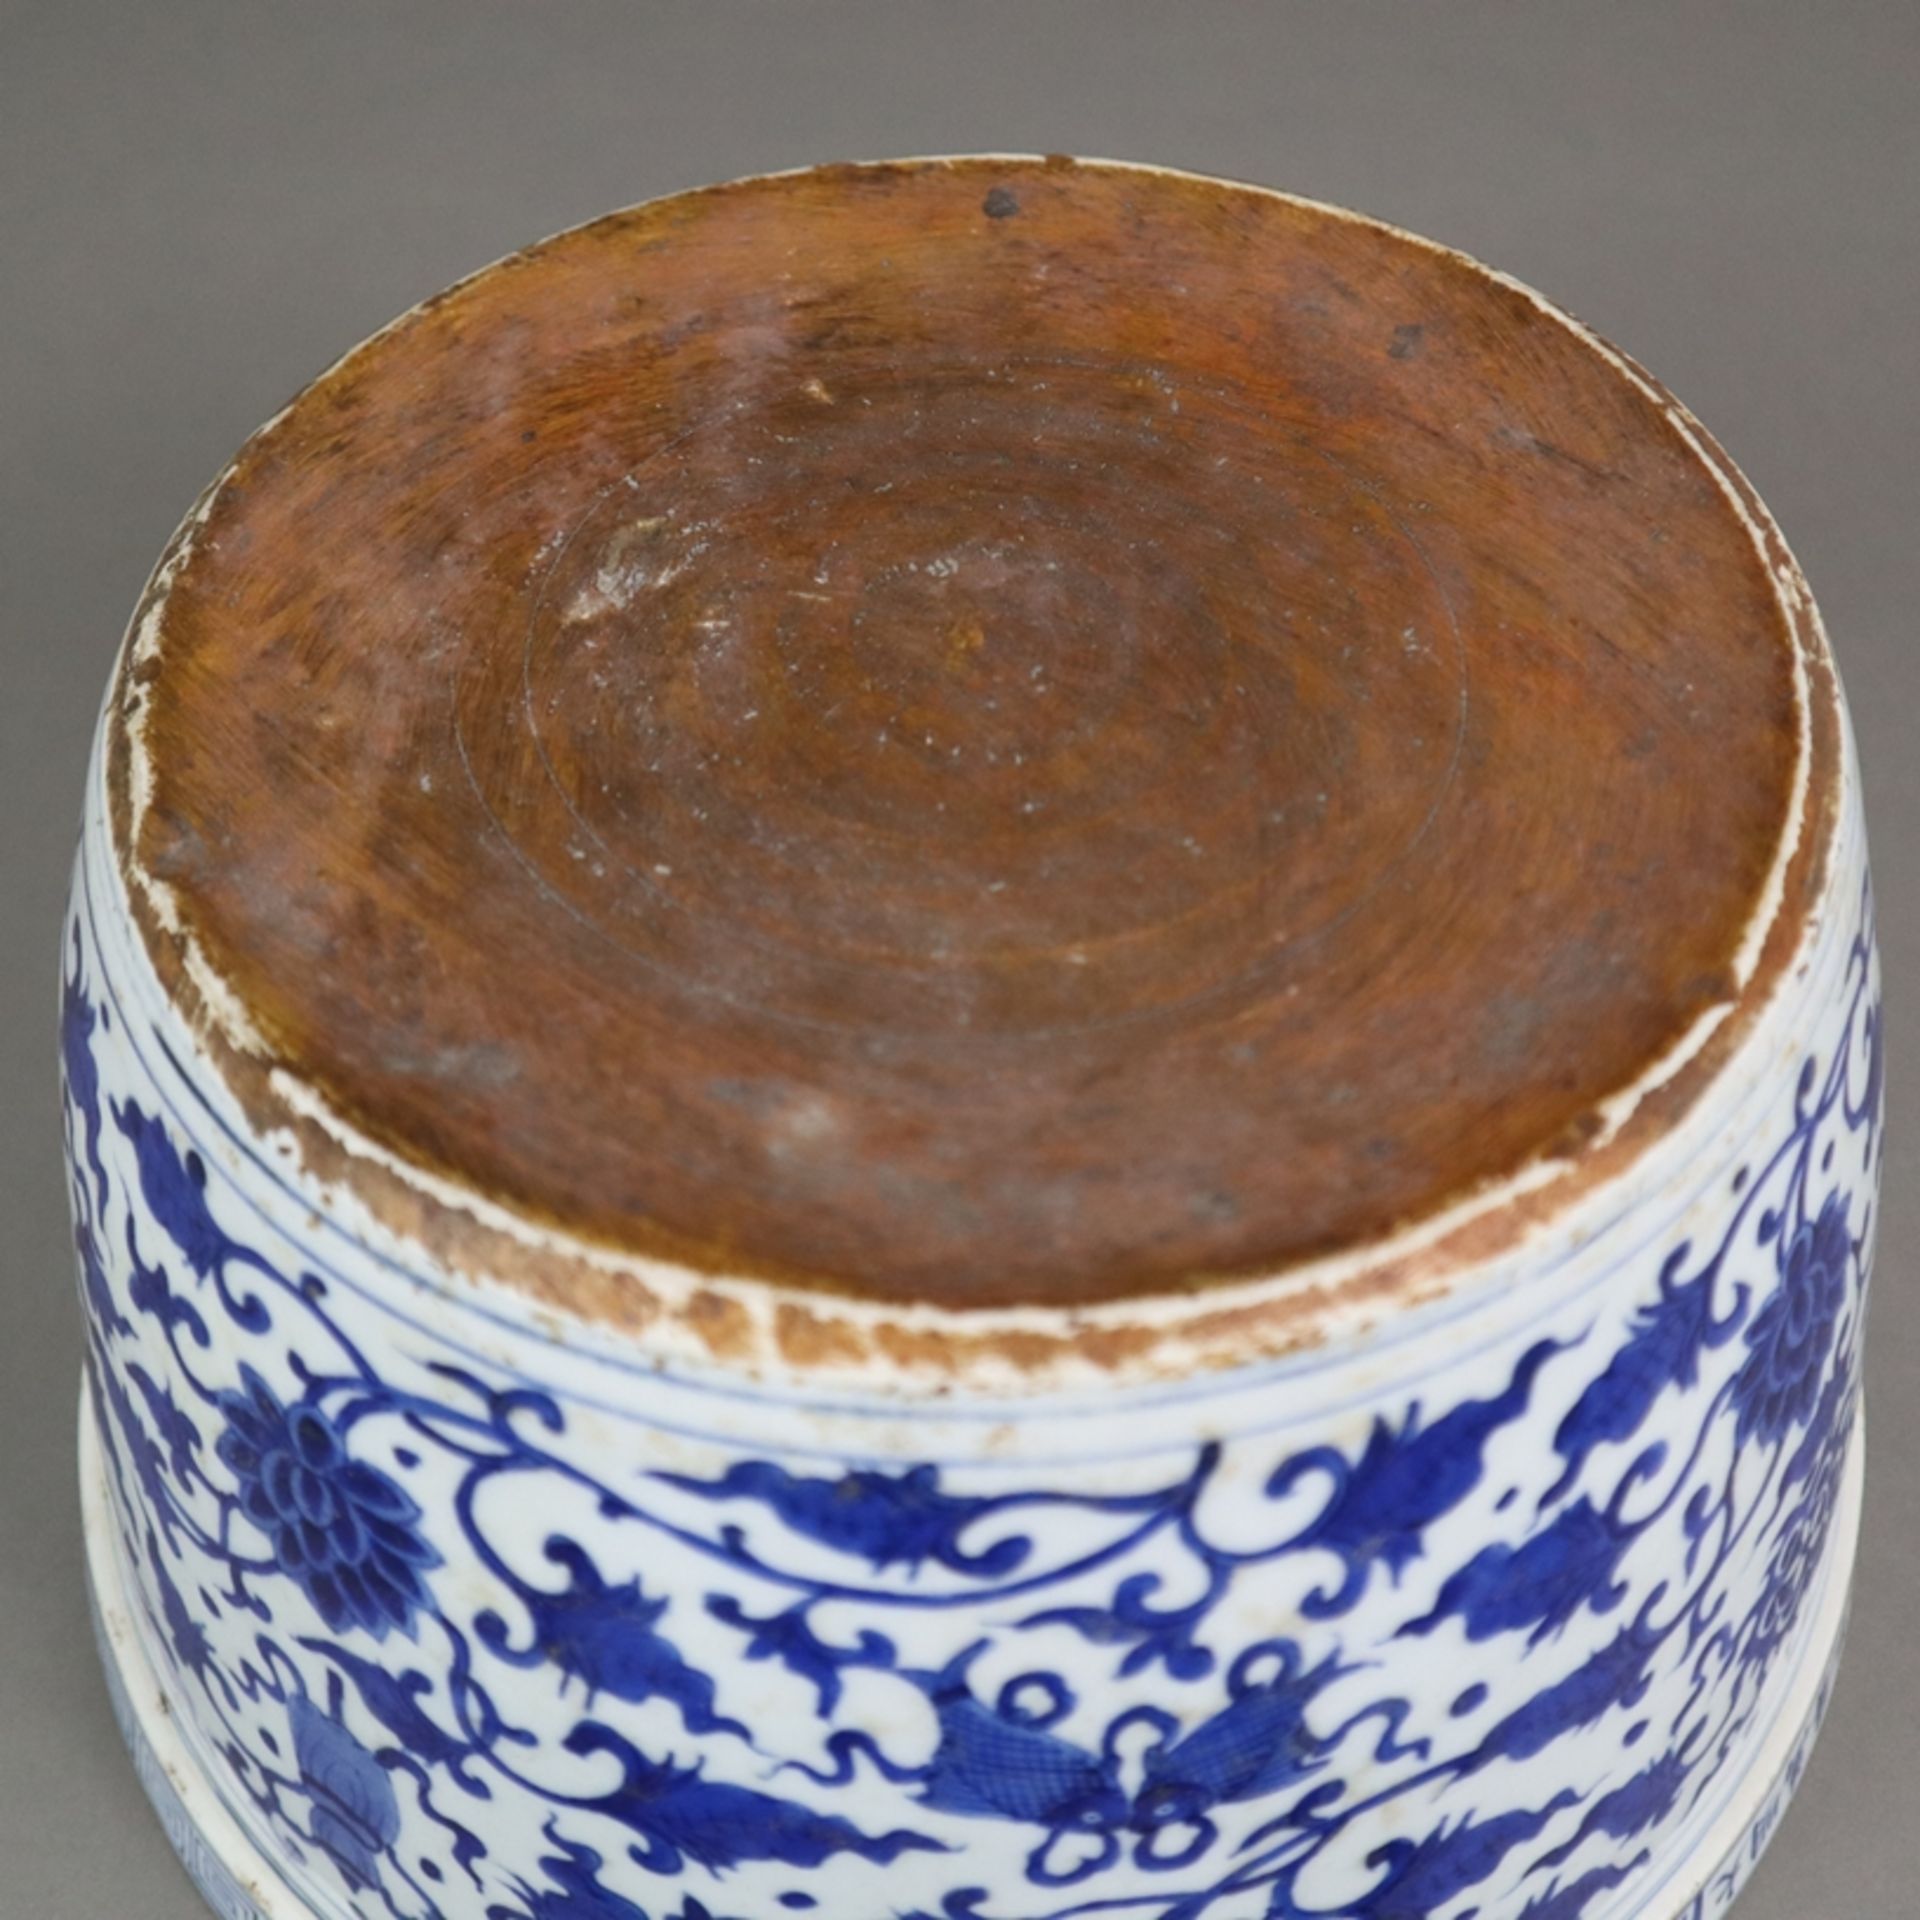 Blau-weißer Cachepot - China, zylindrische, leichte ausgestellte Wandung mit blauem Unterglasurdeko - Image 10 of 10